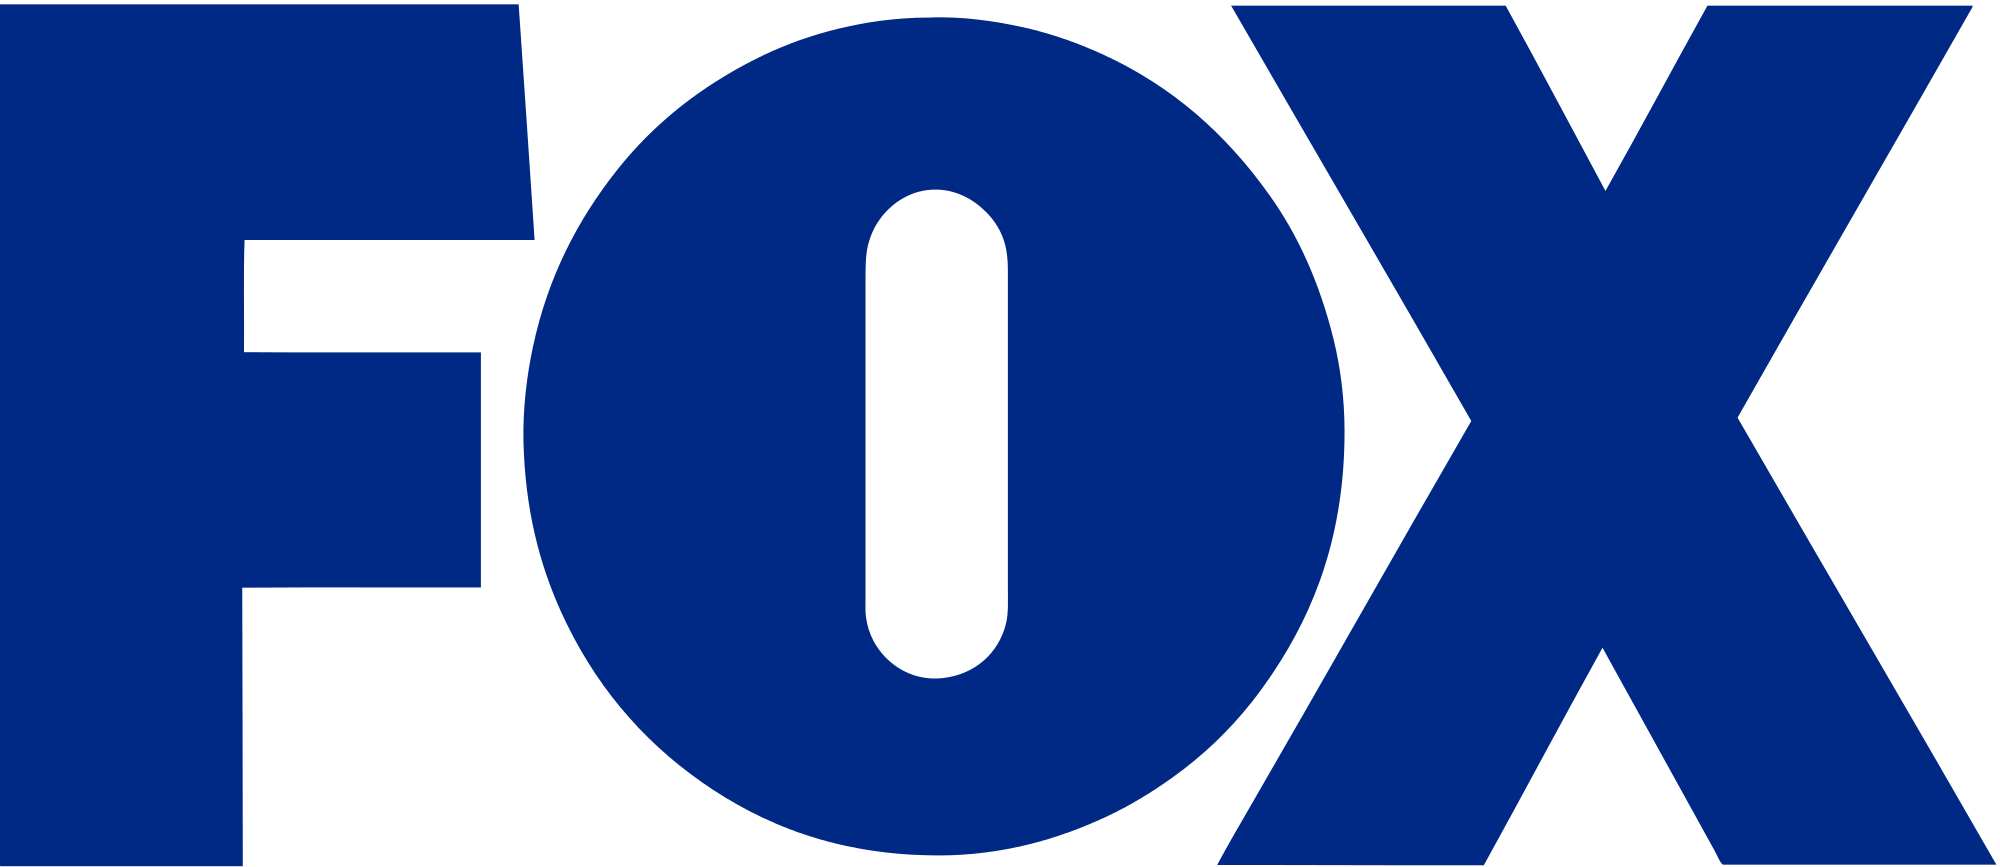 Fox Broadcasting Company - Wikipedia, the free encyclopedia